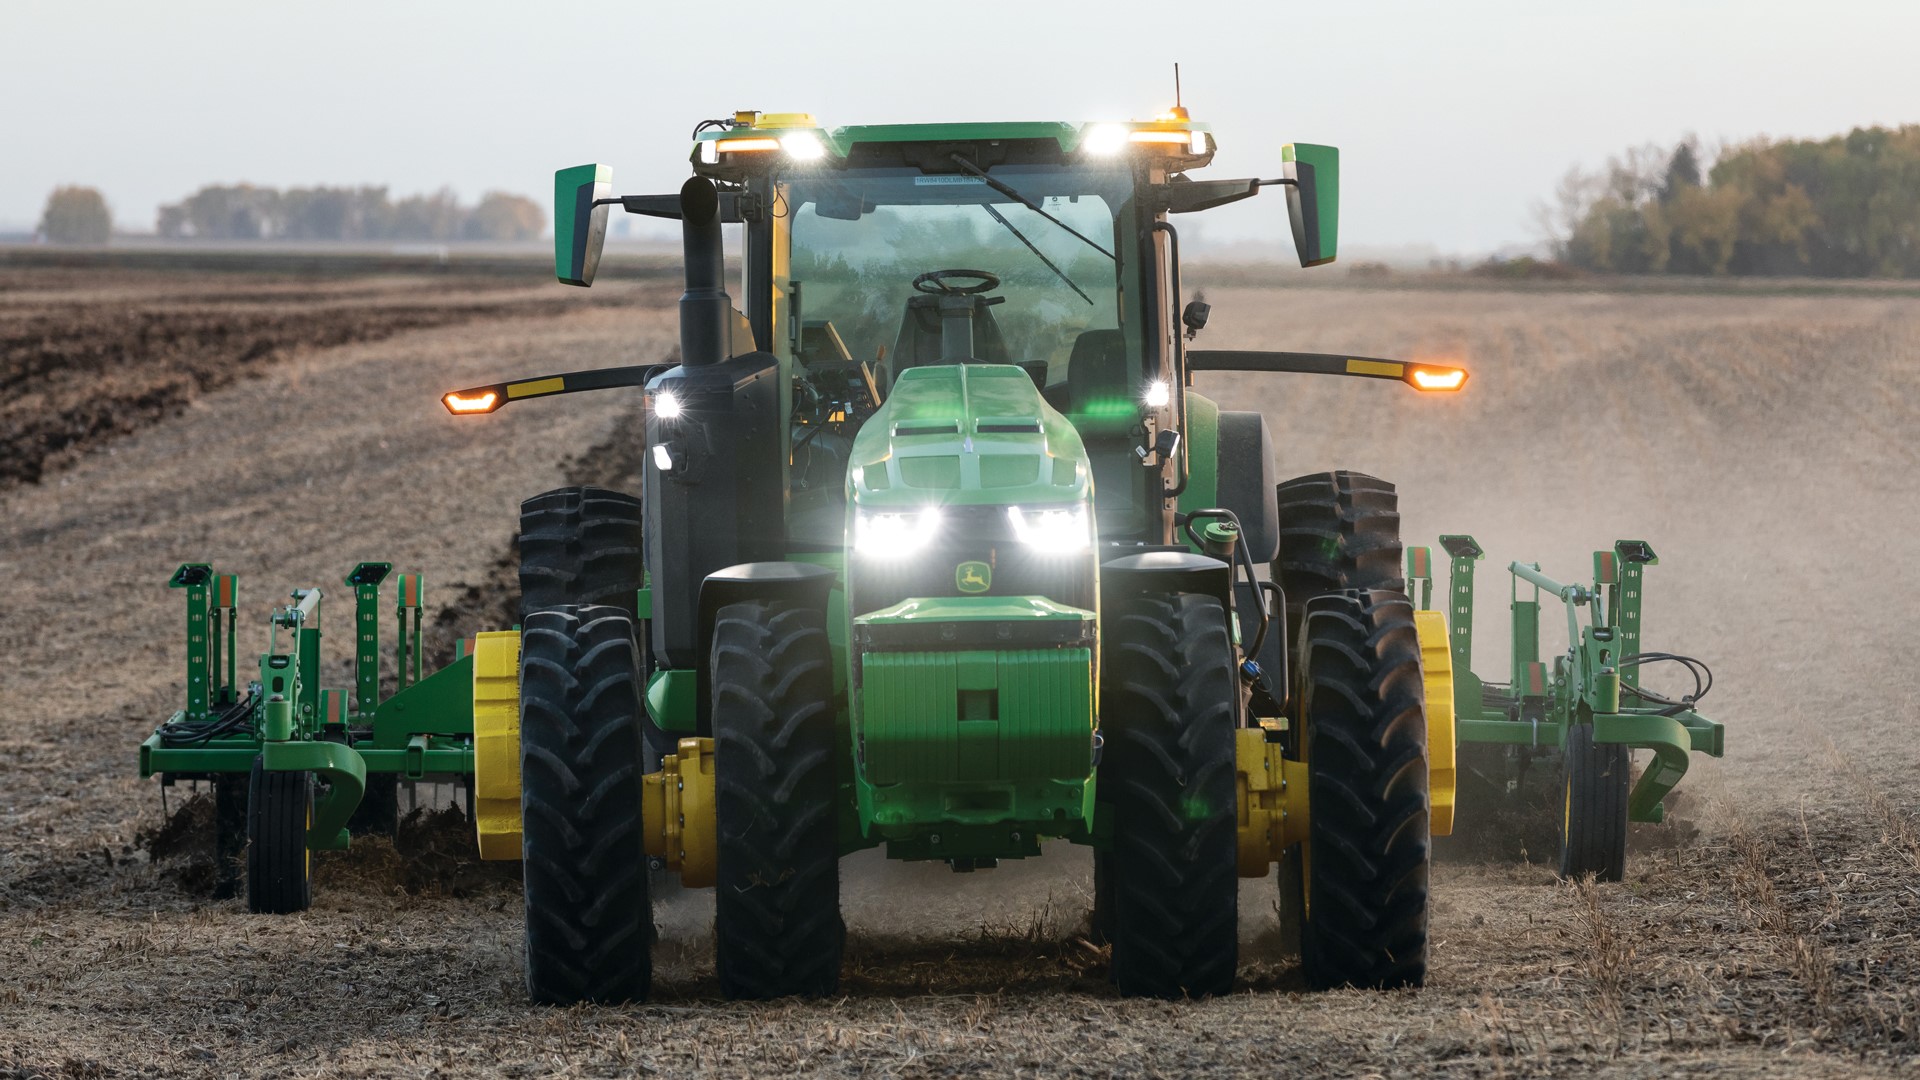 John Deere 8R autonomous tractor. (Source - Deere)